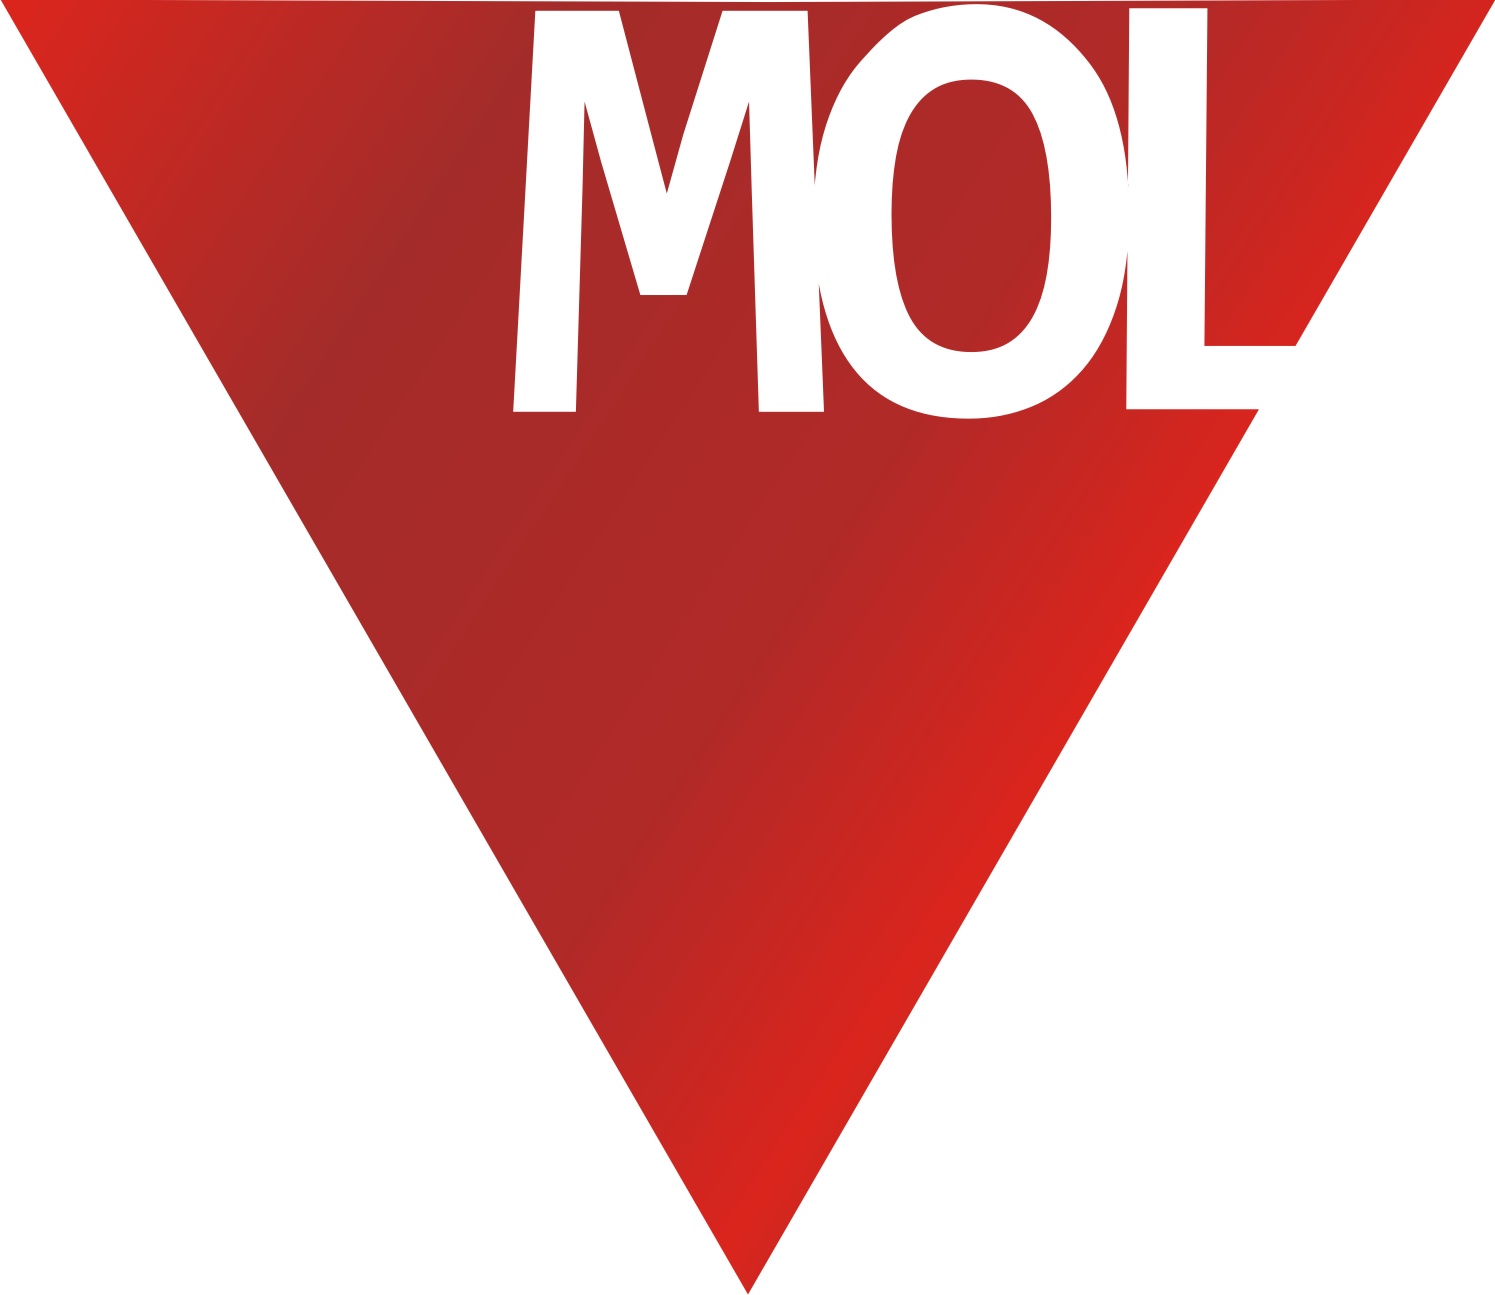 Bővíti a Mol kutatási-termelési portfolióját az Északi-tengeren